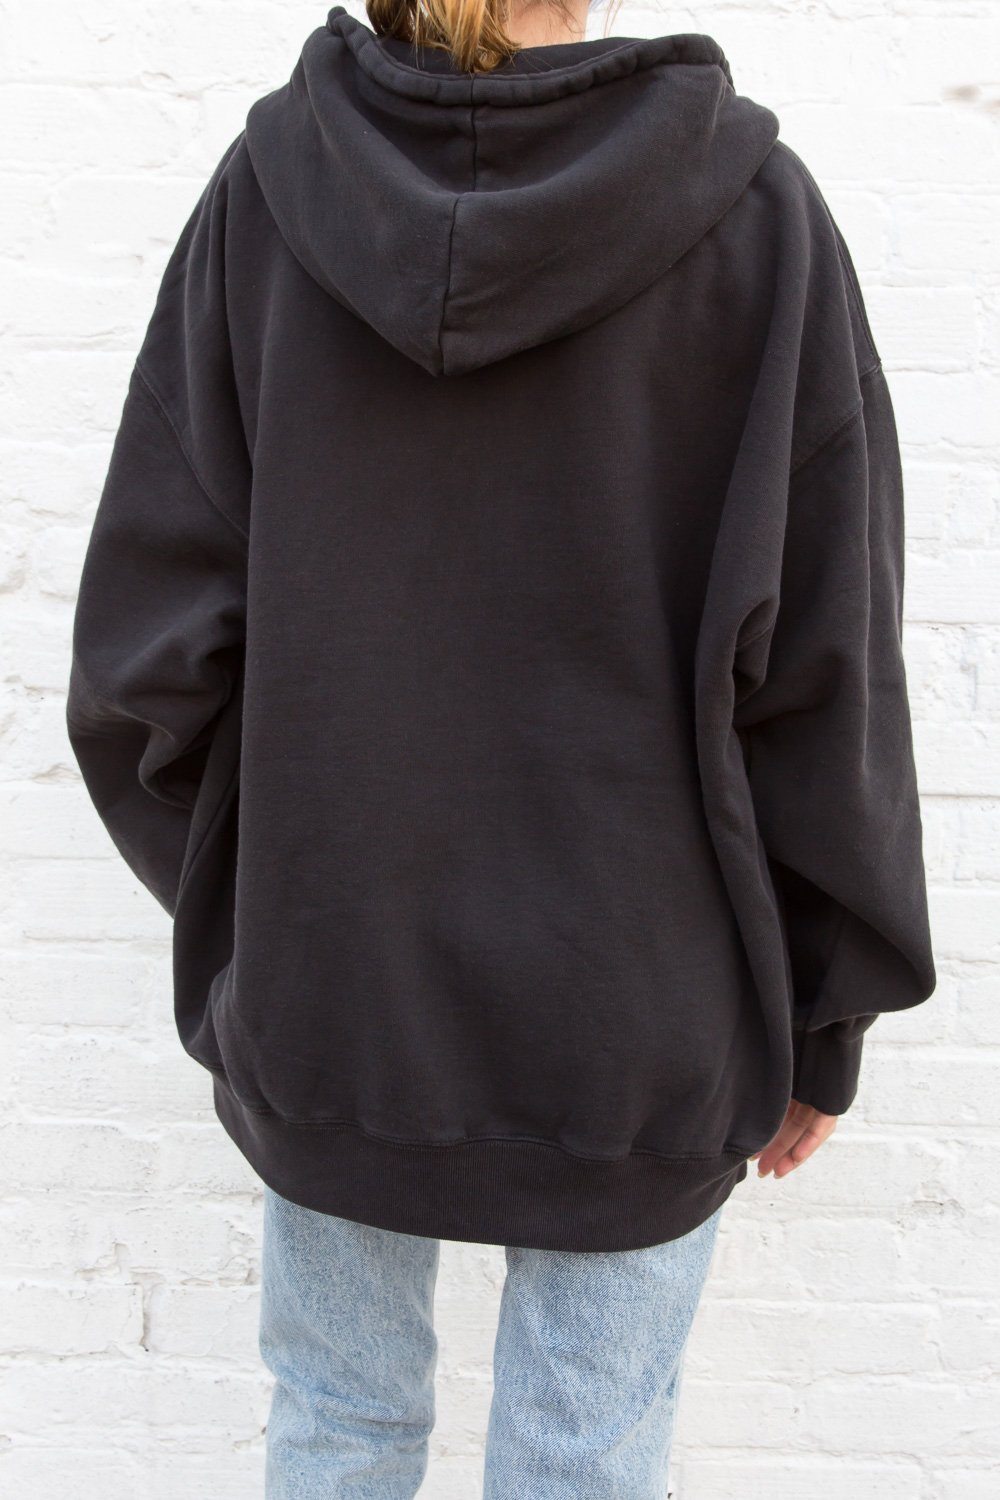 Brandy Melville Hoodie Black Full Zip One Size Pocket sweatshirt